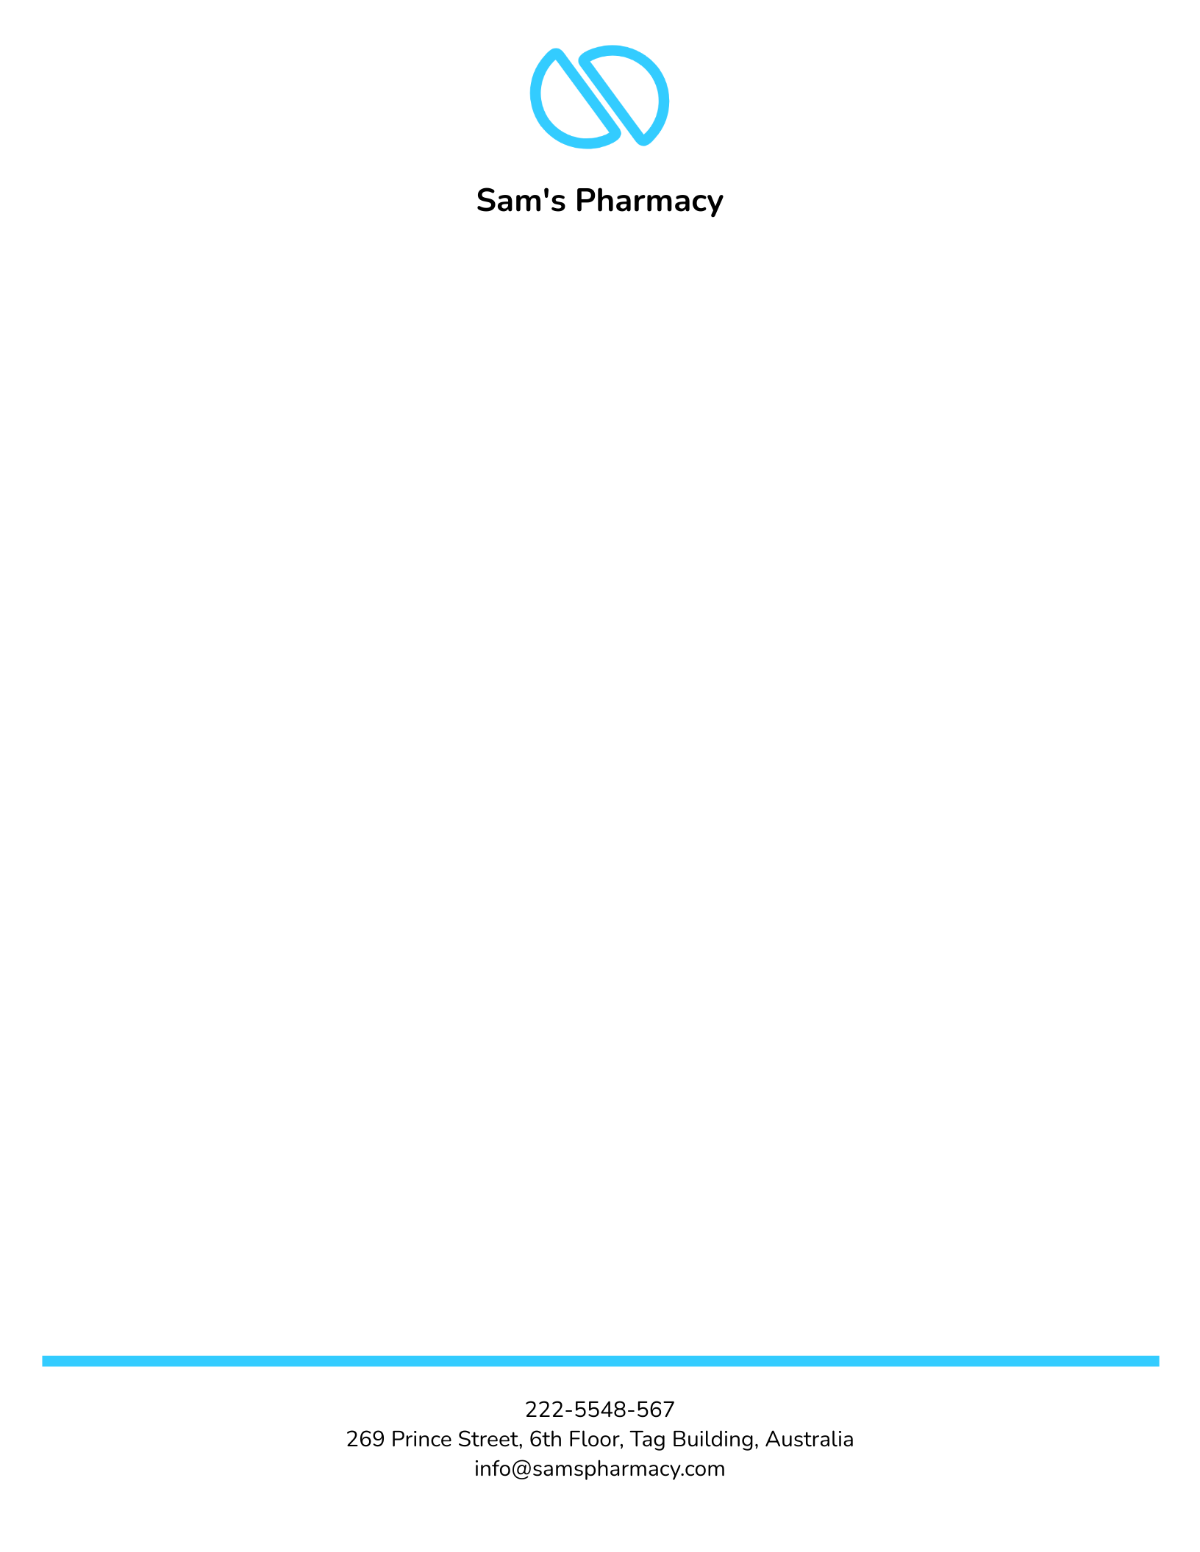 Sample Pharmacy Letterhead